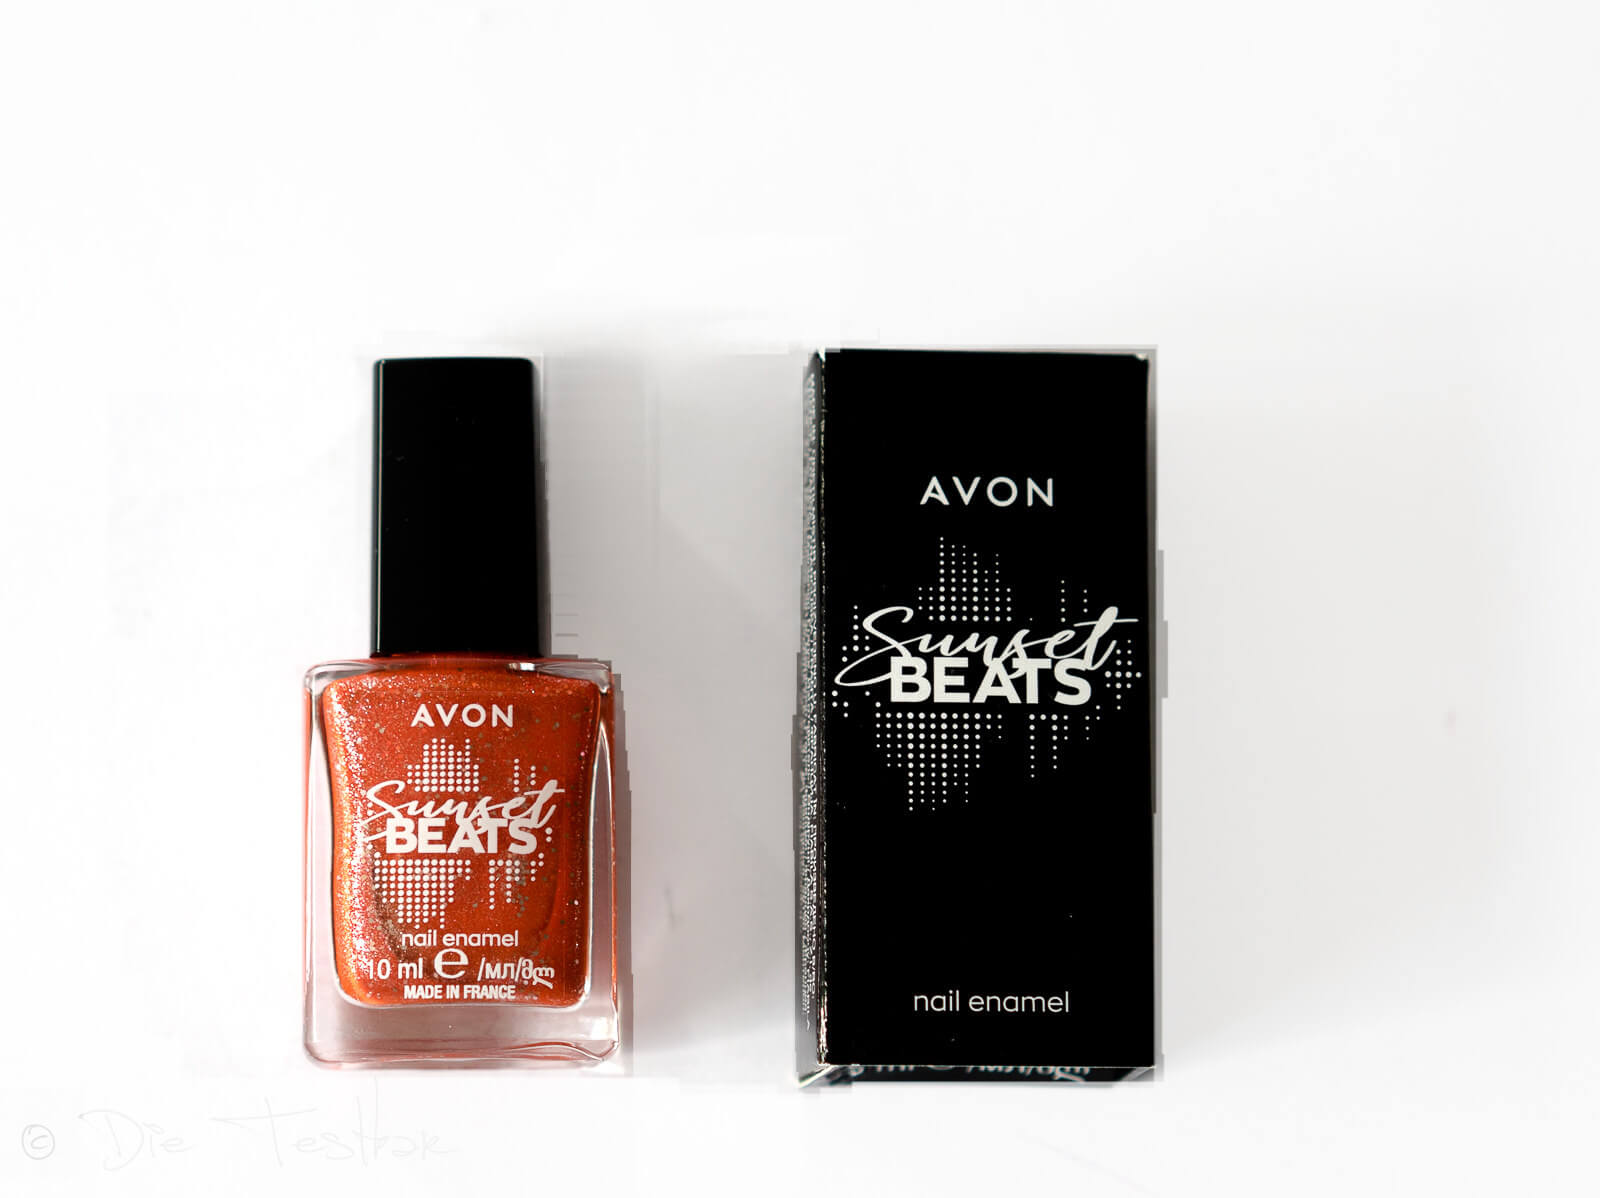 Kosmetik in wunderschönen Herbstfarben - Make-up von Avon für einen tollen Herbstlook 71